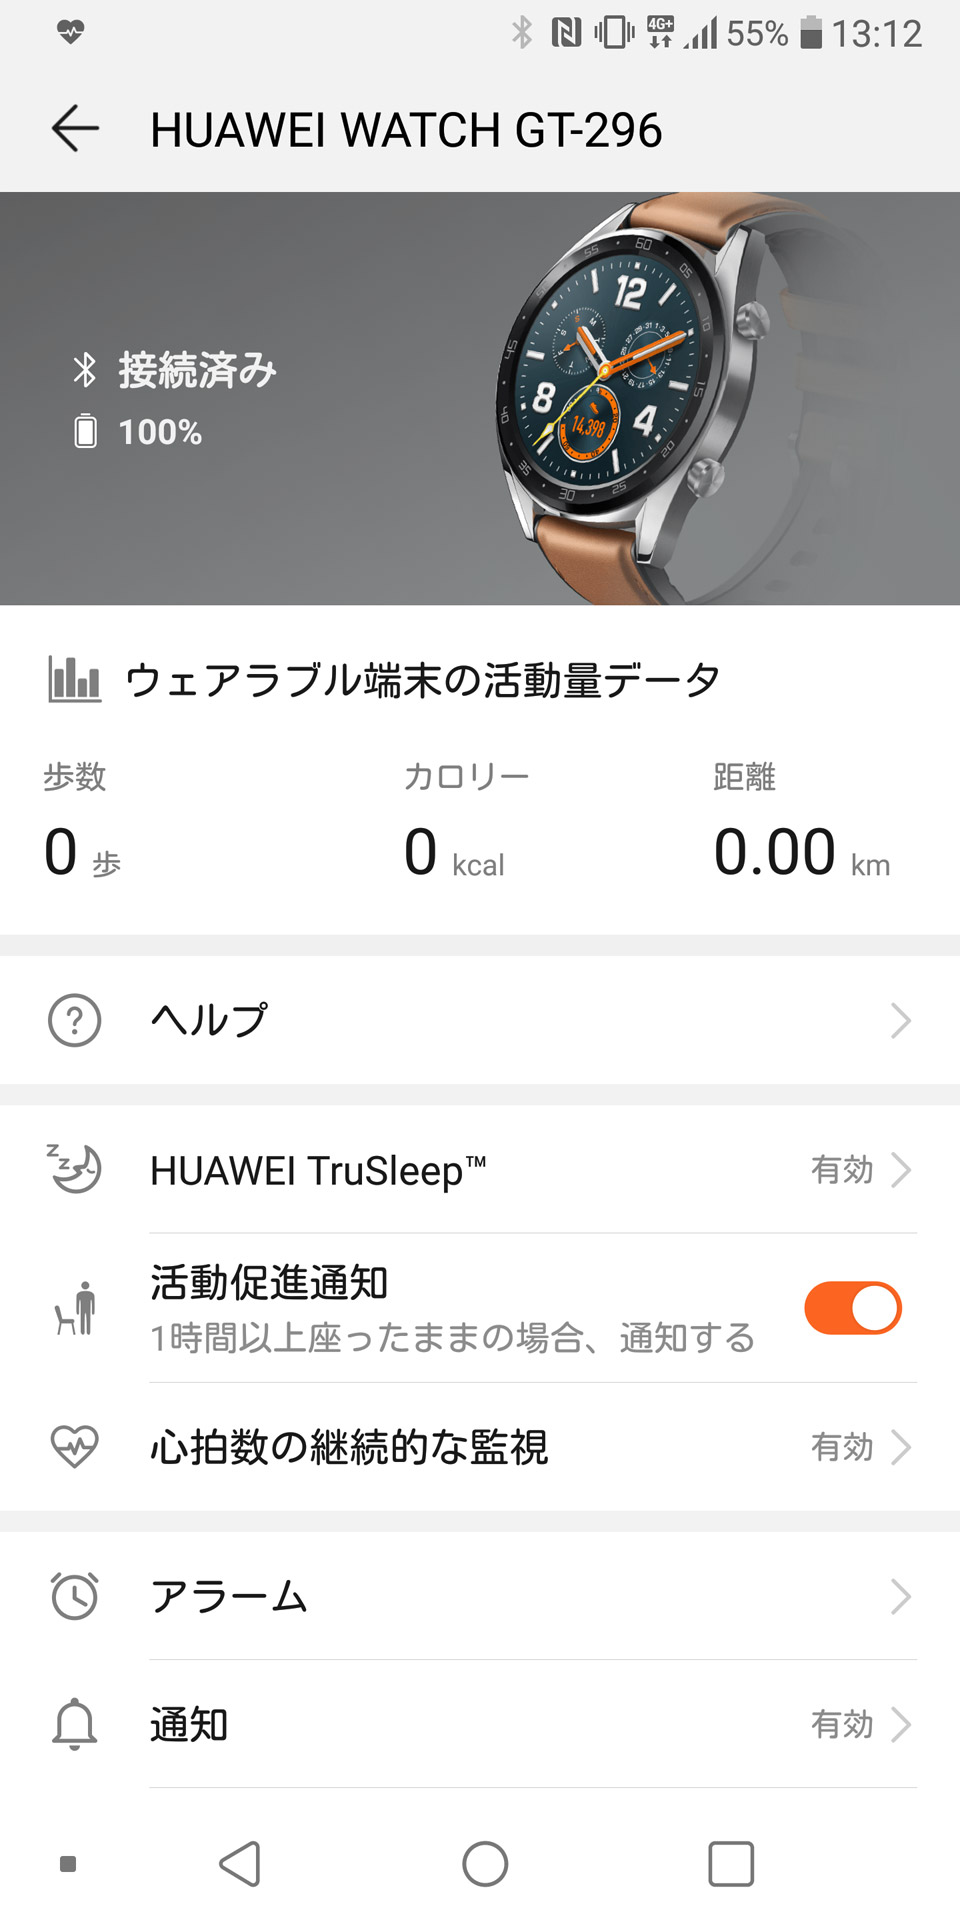 Как подключить часы huawei gt. Приложение часов в часах Хуавей. FTN-b19 Huawei watch gt оранжевый. Хуавей Джи 1 часы. Смарт вотч gt3.